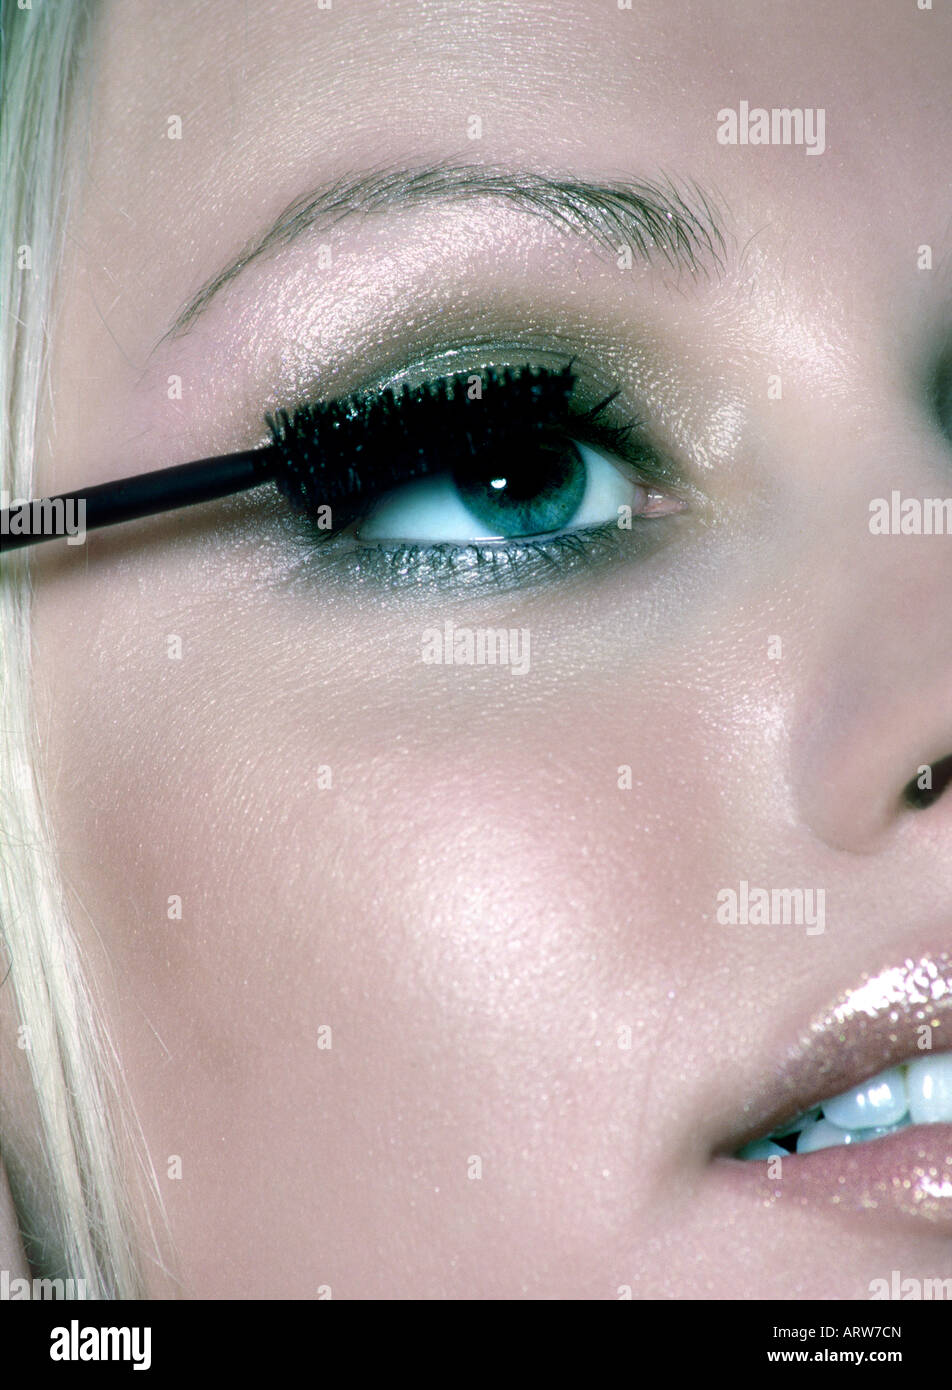 Woman applying mascara on her eyelashes Stock Photo